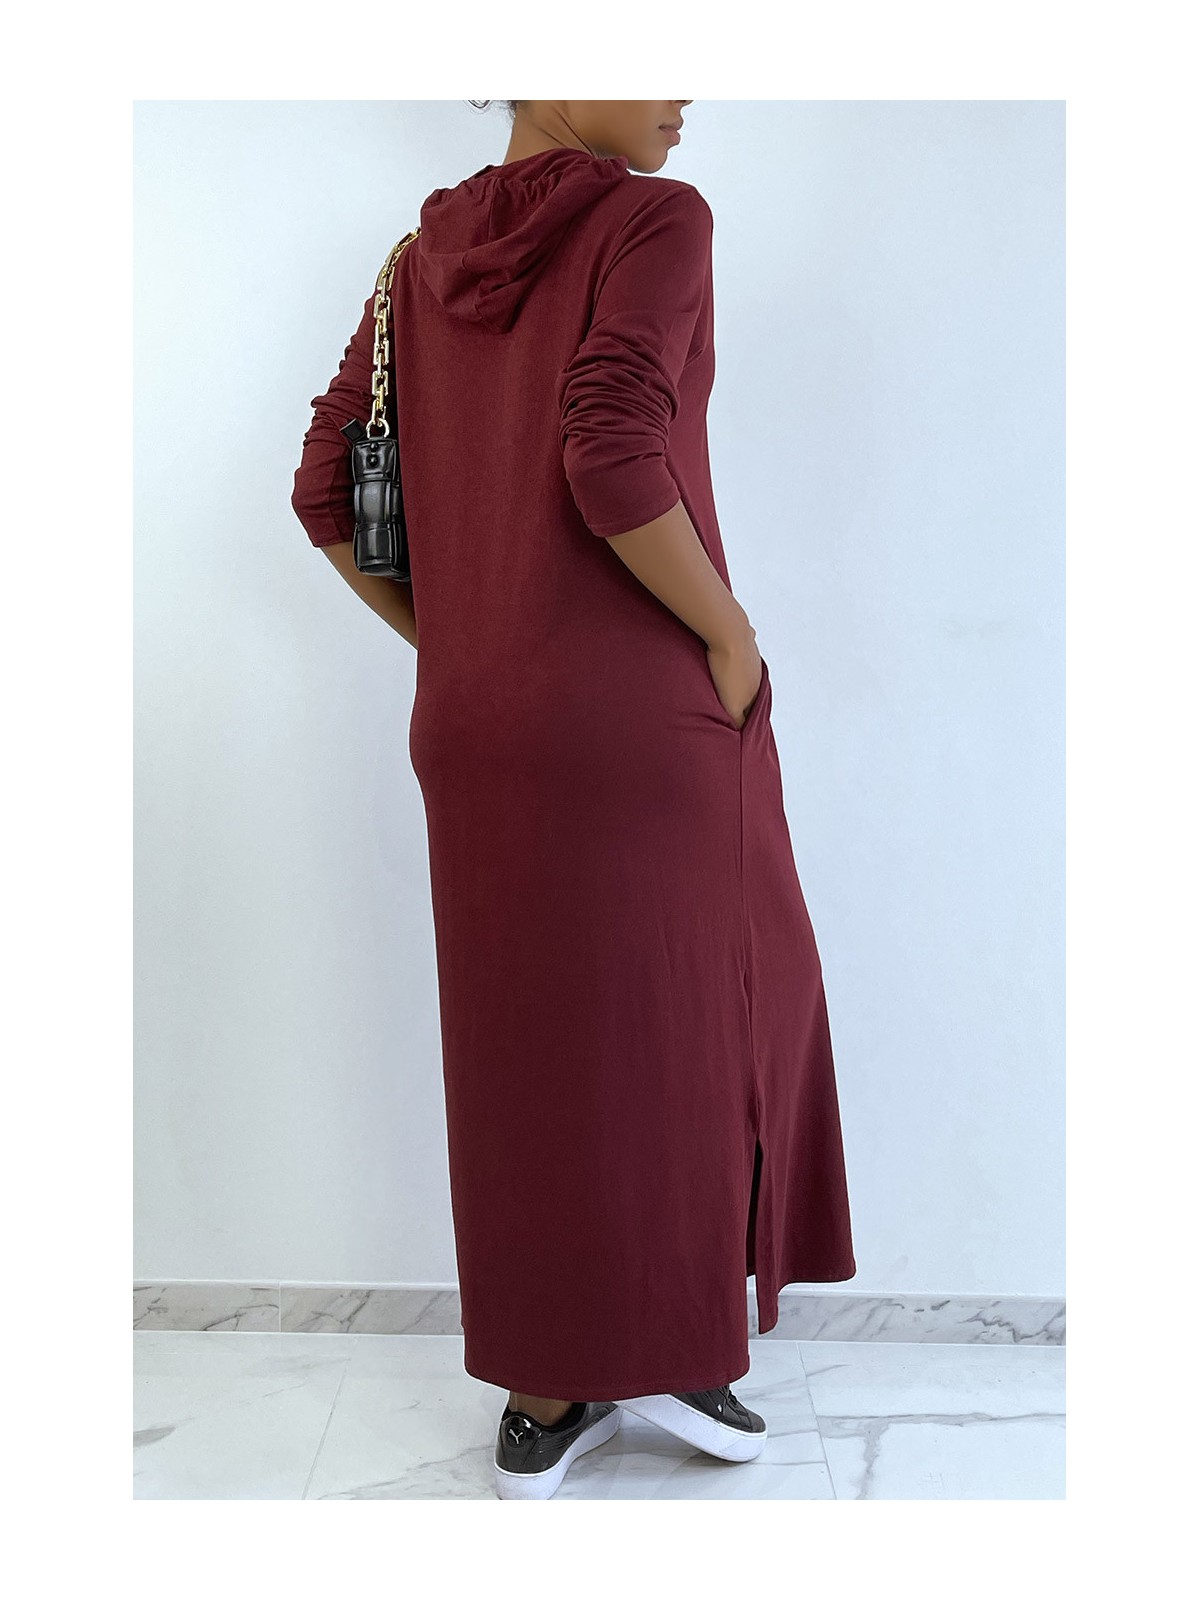 Longue robe sweat abaya bordeaux à capuche - 4